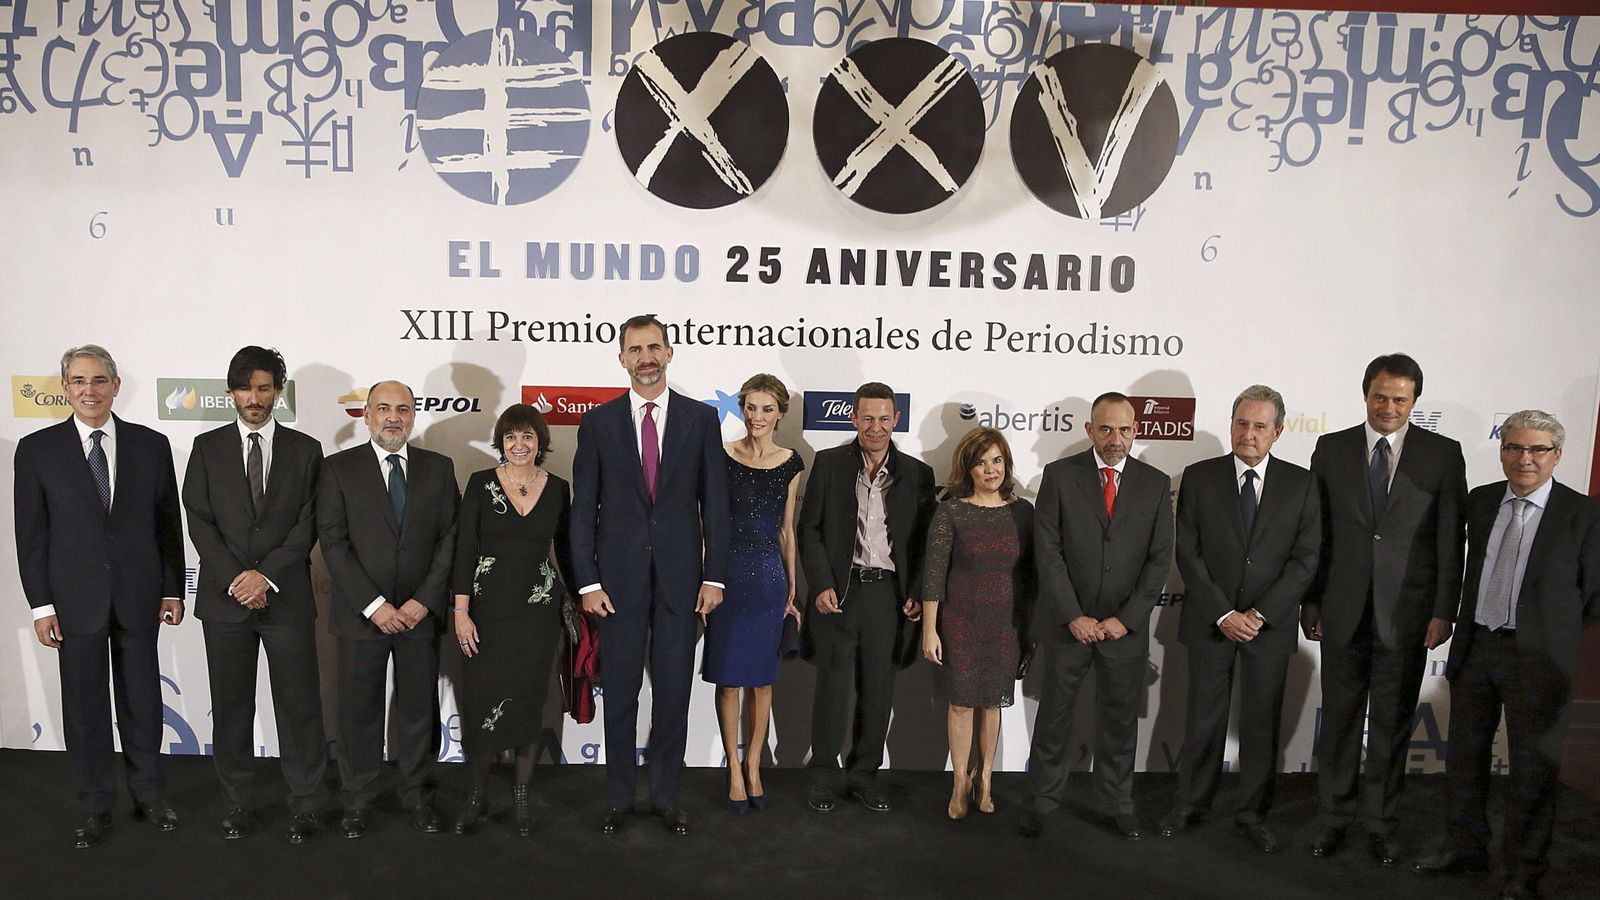 Foto: Los Reyes presidieron el XXV aniversario del diario 'El Mundo' en octubre de 2014, con García-Abadillo como director. (EFE)